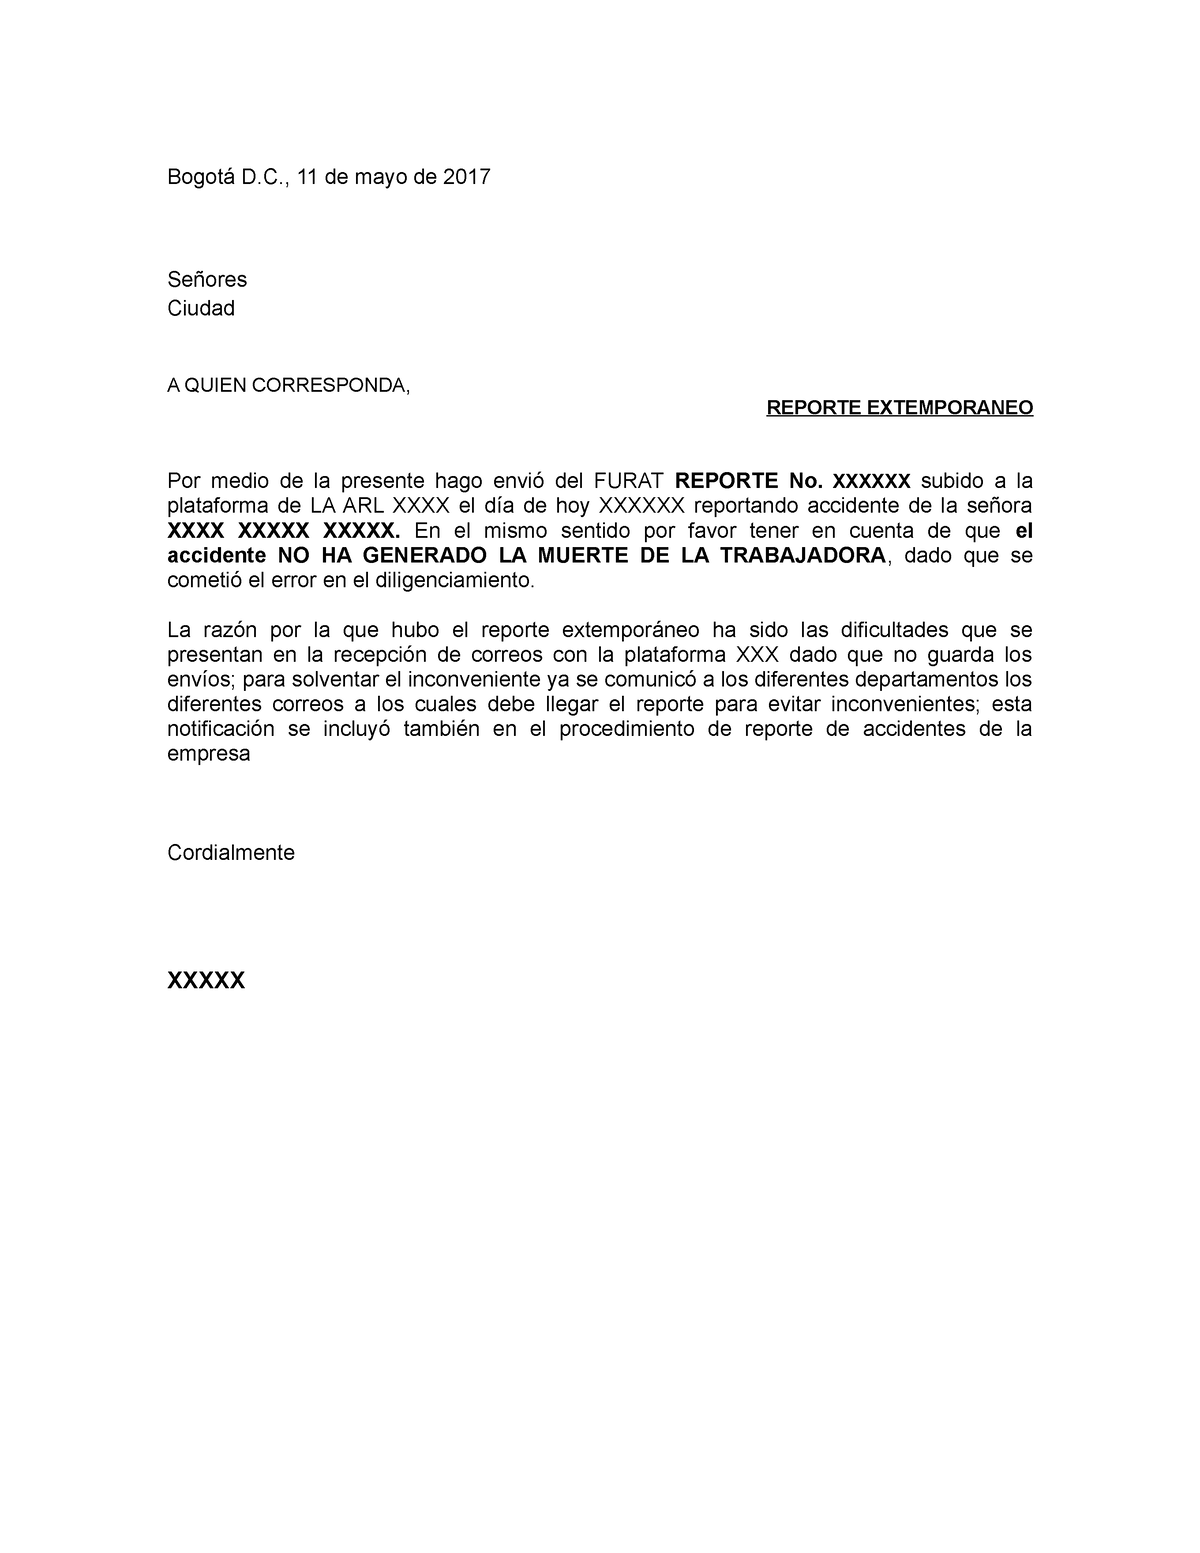 Carta para el Reporte de accidente de trabajo -Extemporaneo - Bogotá D., 11  de mayo de 2017 Señores - Studocu